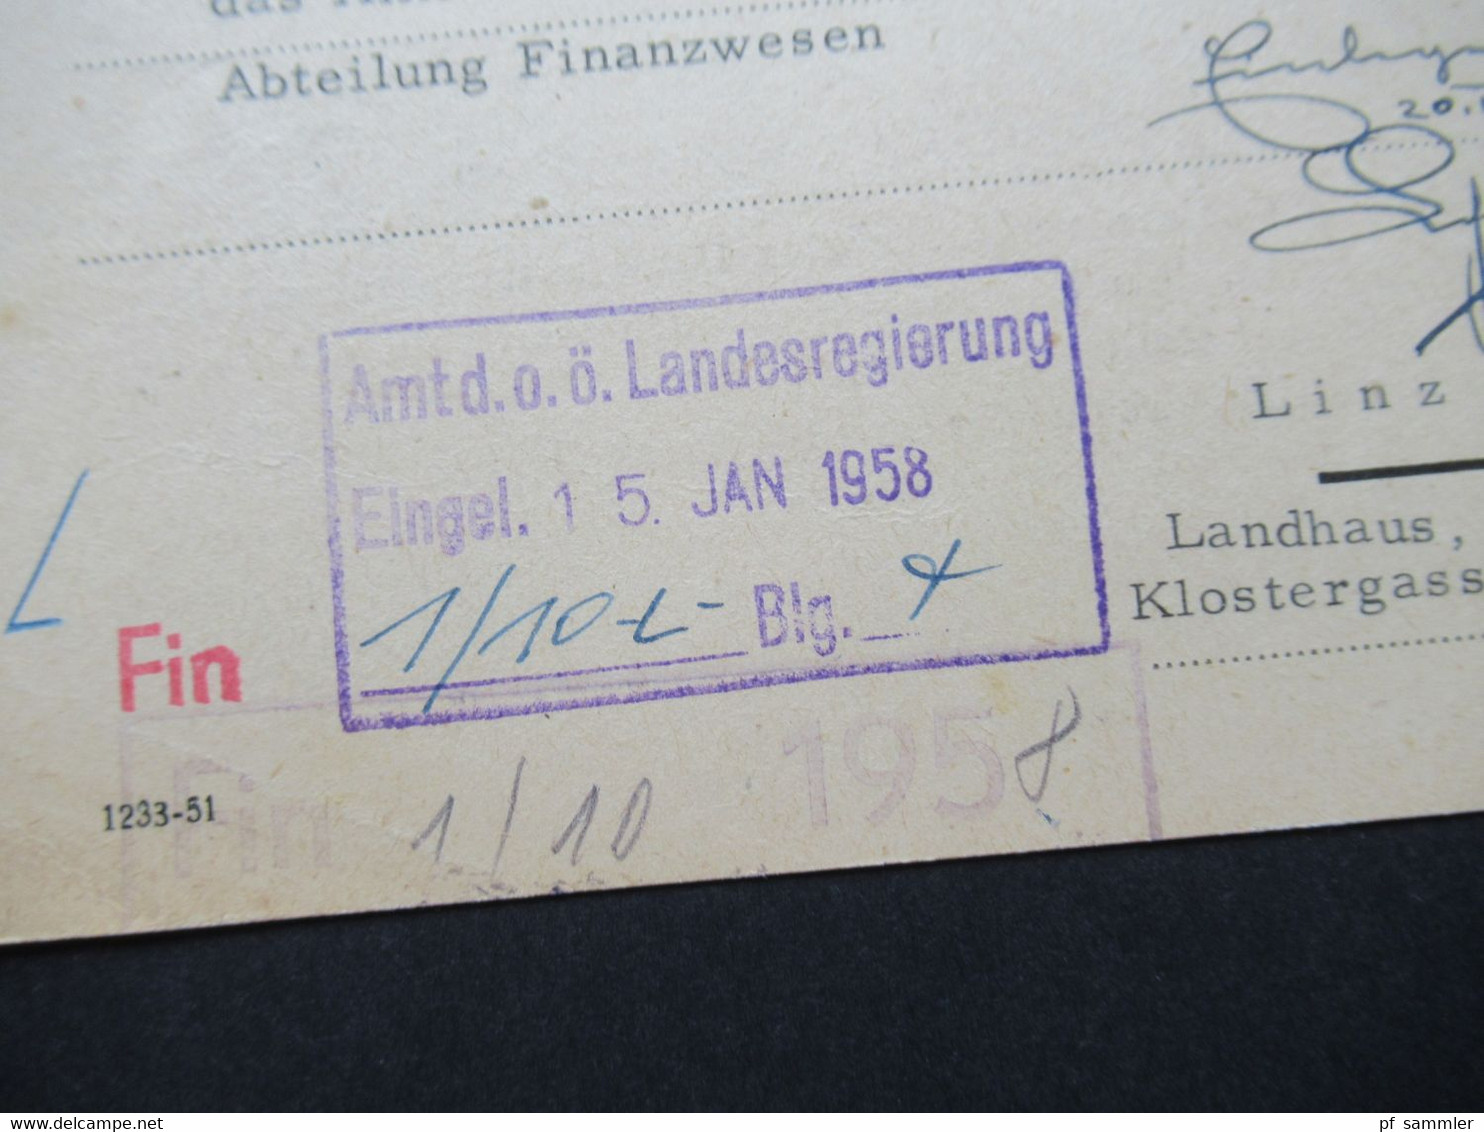 Österreich 1958 PK Mit Freistempel 100 Groschen Magistrat Graz An Das Amt Der O.Ö. Landesregierung In Linz Stempel Fin - Lettres & Documents